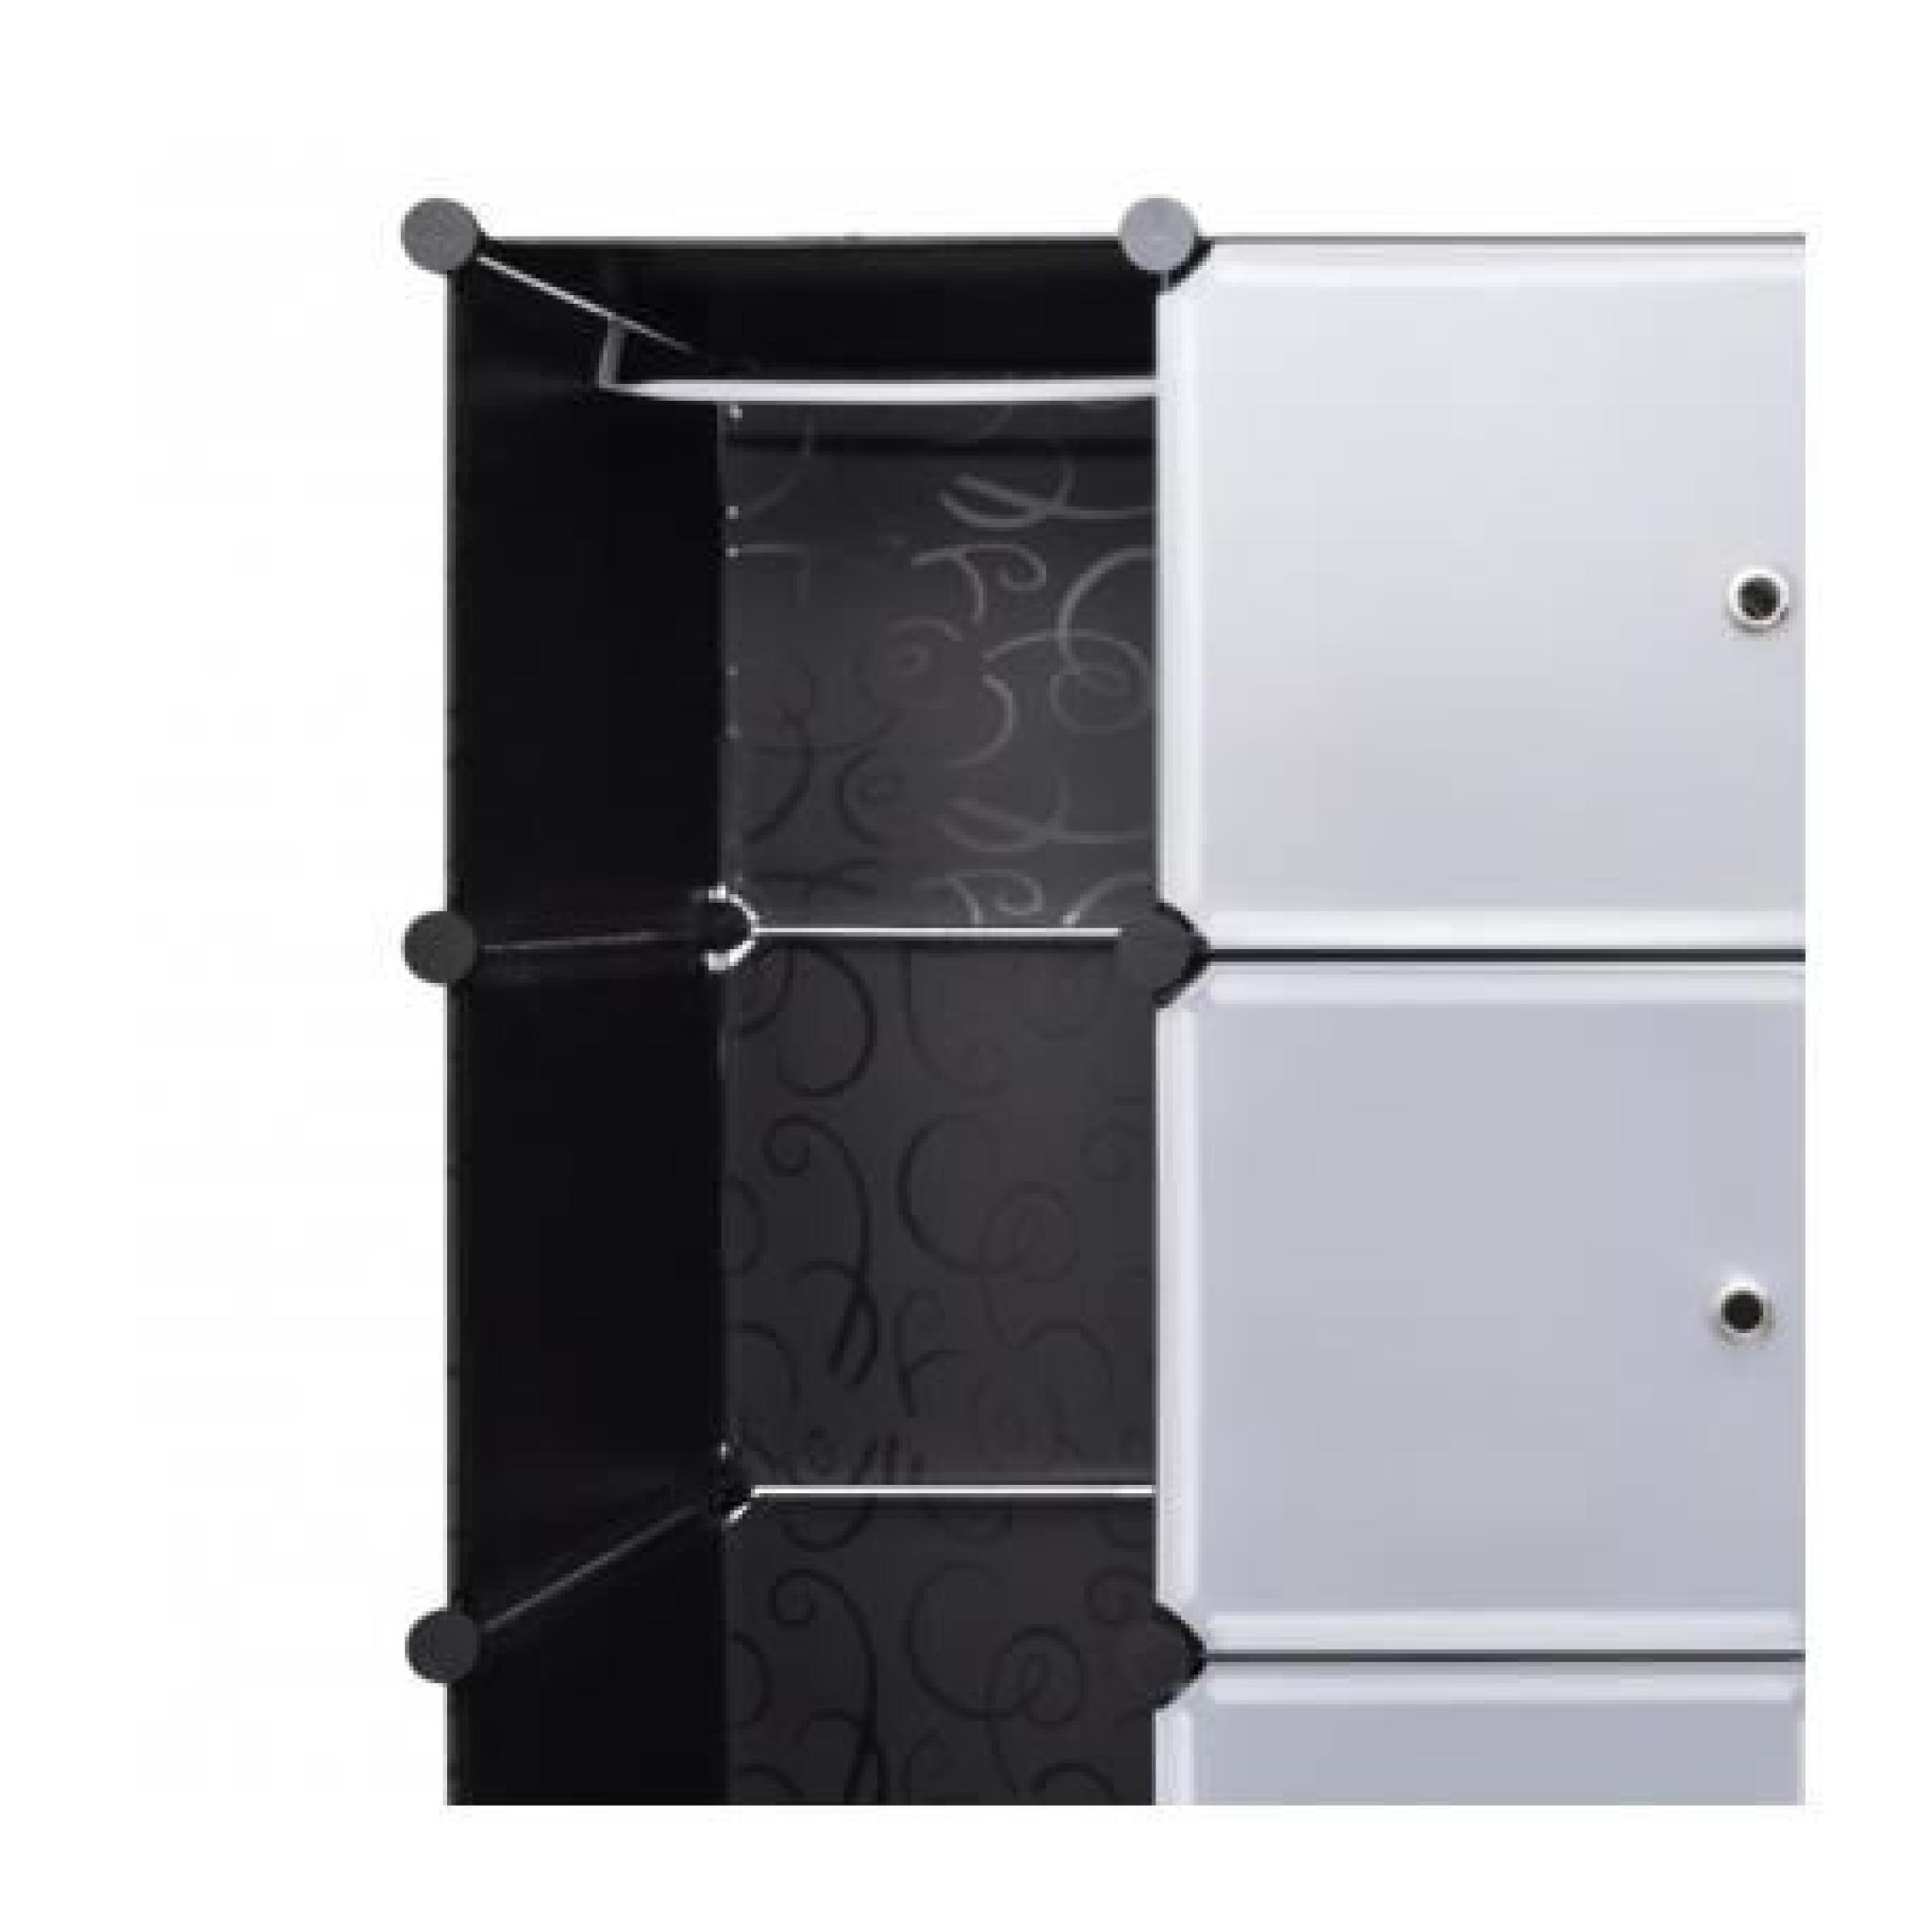 Cabinet modulable noir et blanc avec 18 compartiments 37 x 150 x 190 cm pas cher